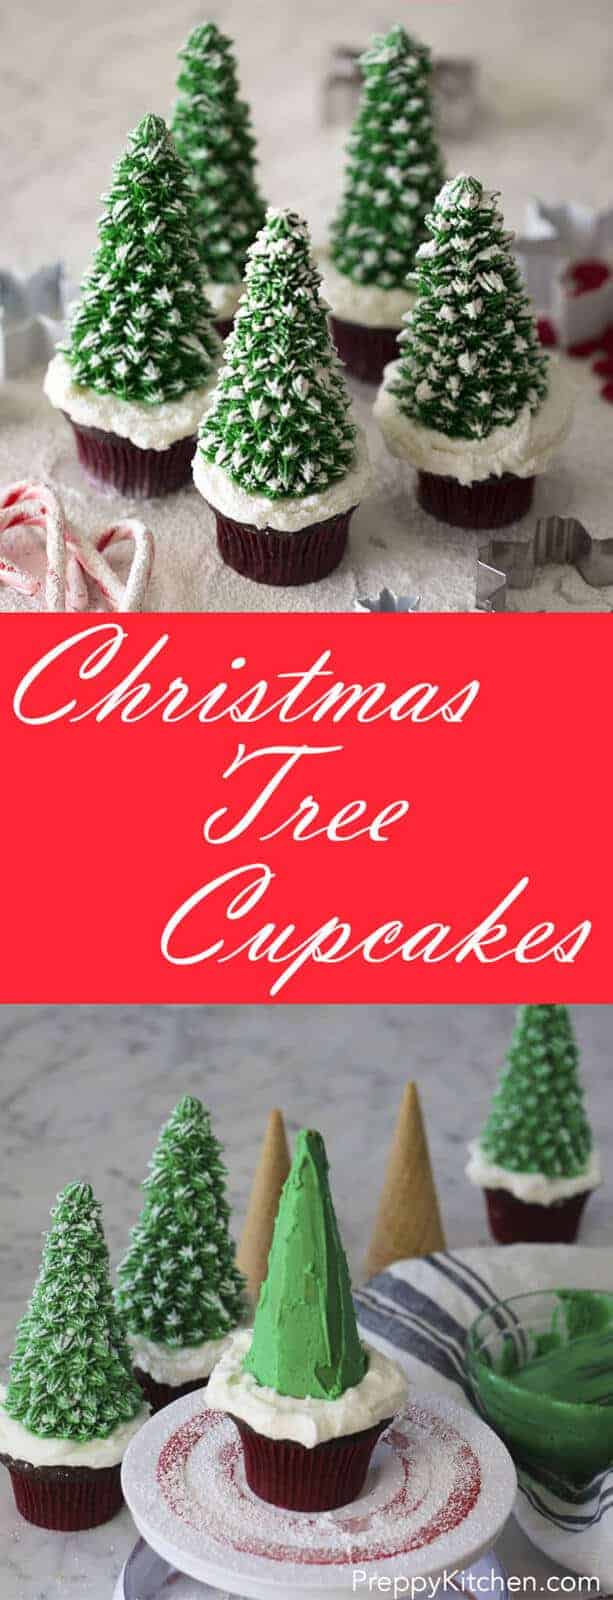 Christmas Tree Cupcakes - Preppy Kitchen